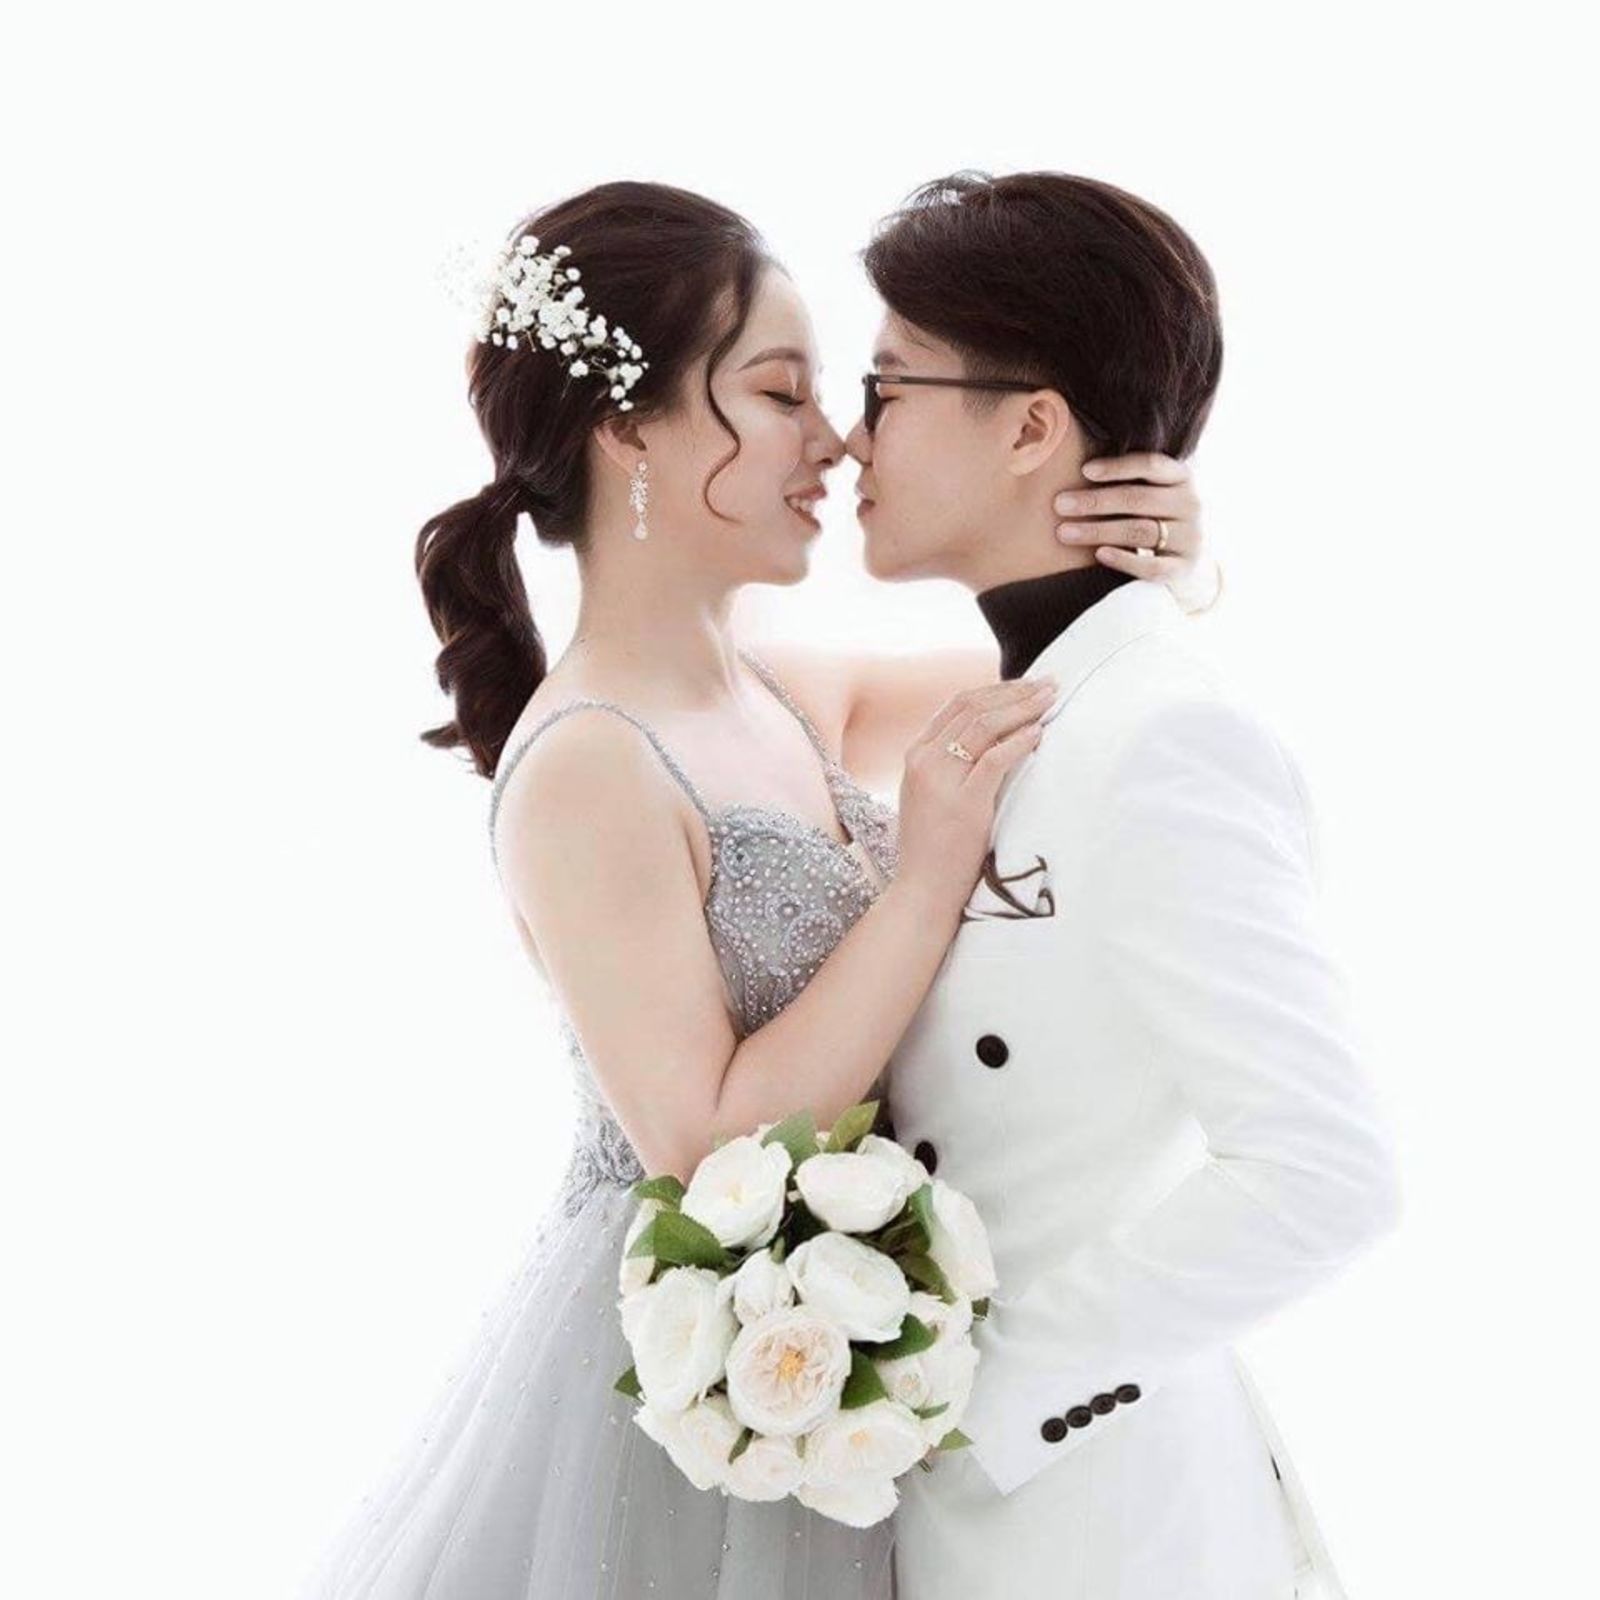 Lâm Khánh Chi tổ chức đám cưới cho người yêu cũ: Chồng kém tuổi phản ứng bất ngờ - 8